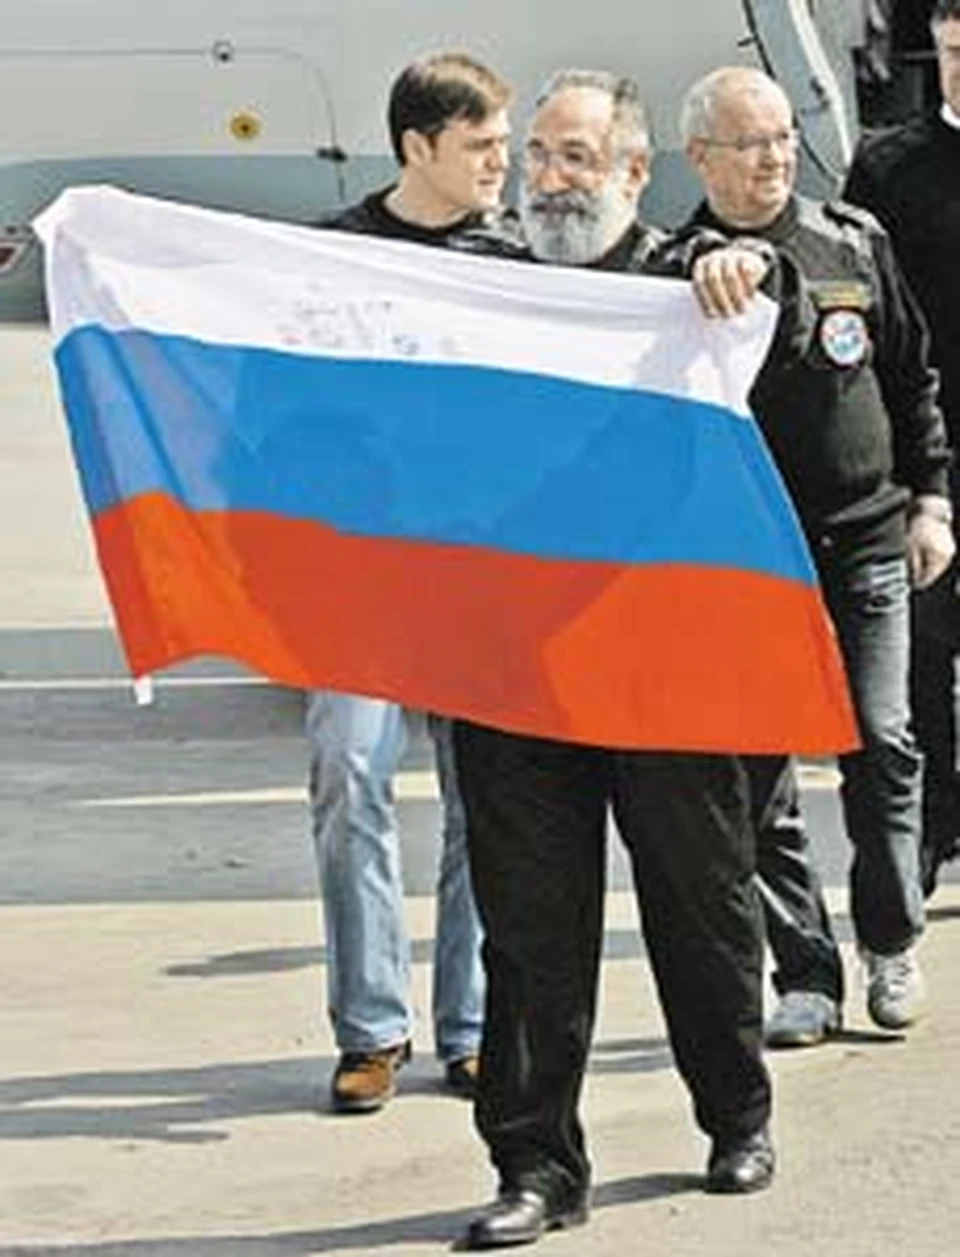 Экипаж № 1 - Владимир Груздев, Артур Чилингаров и Анатолий Сагалевич (слева направо): «С этим флагом мы спускались на дно океана».